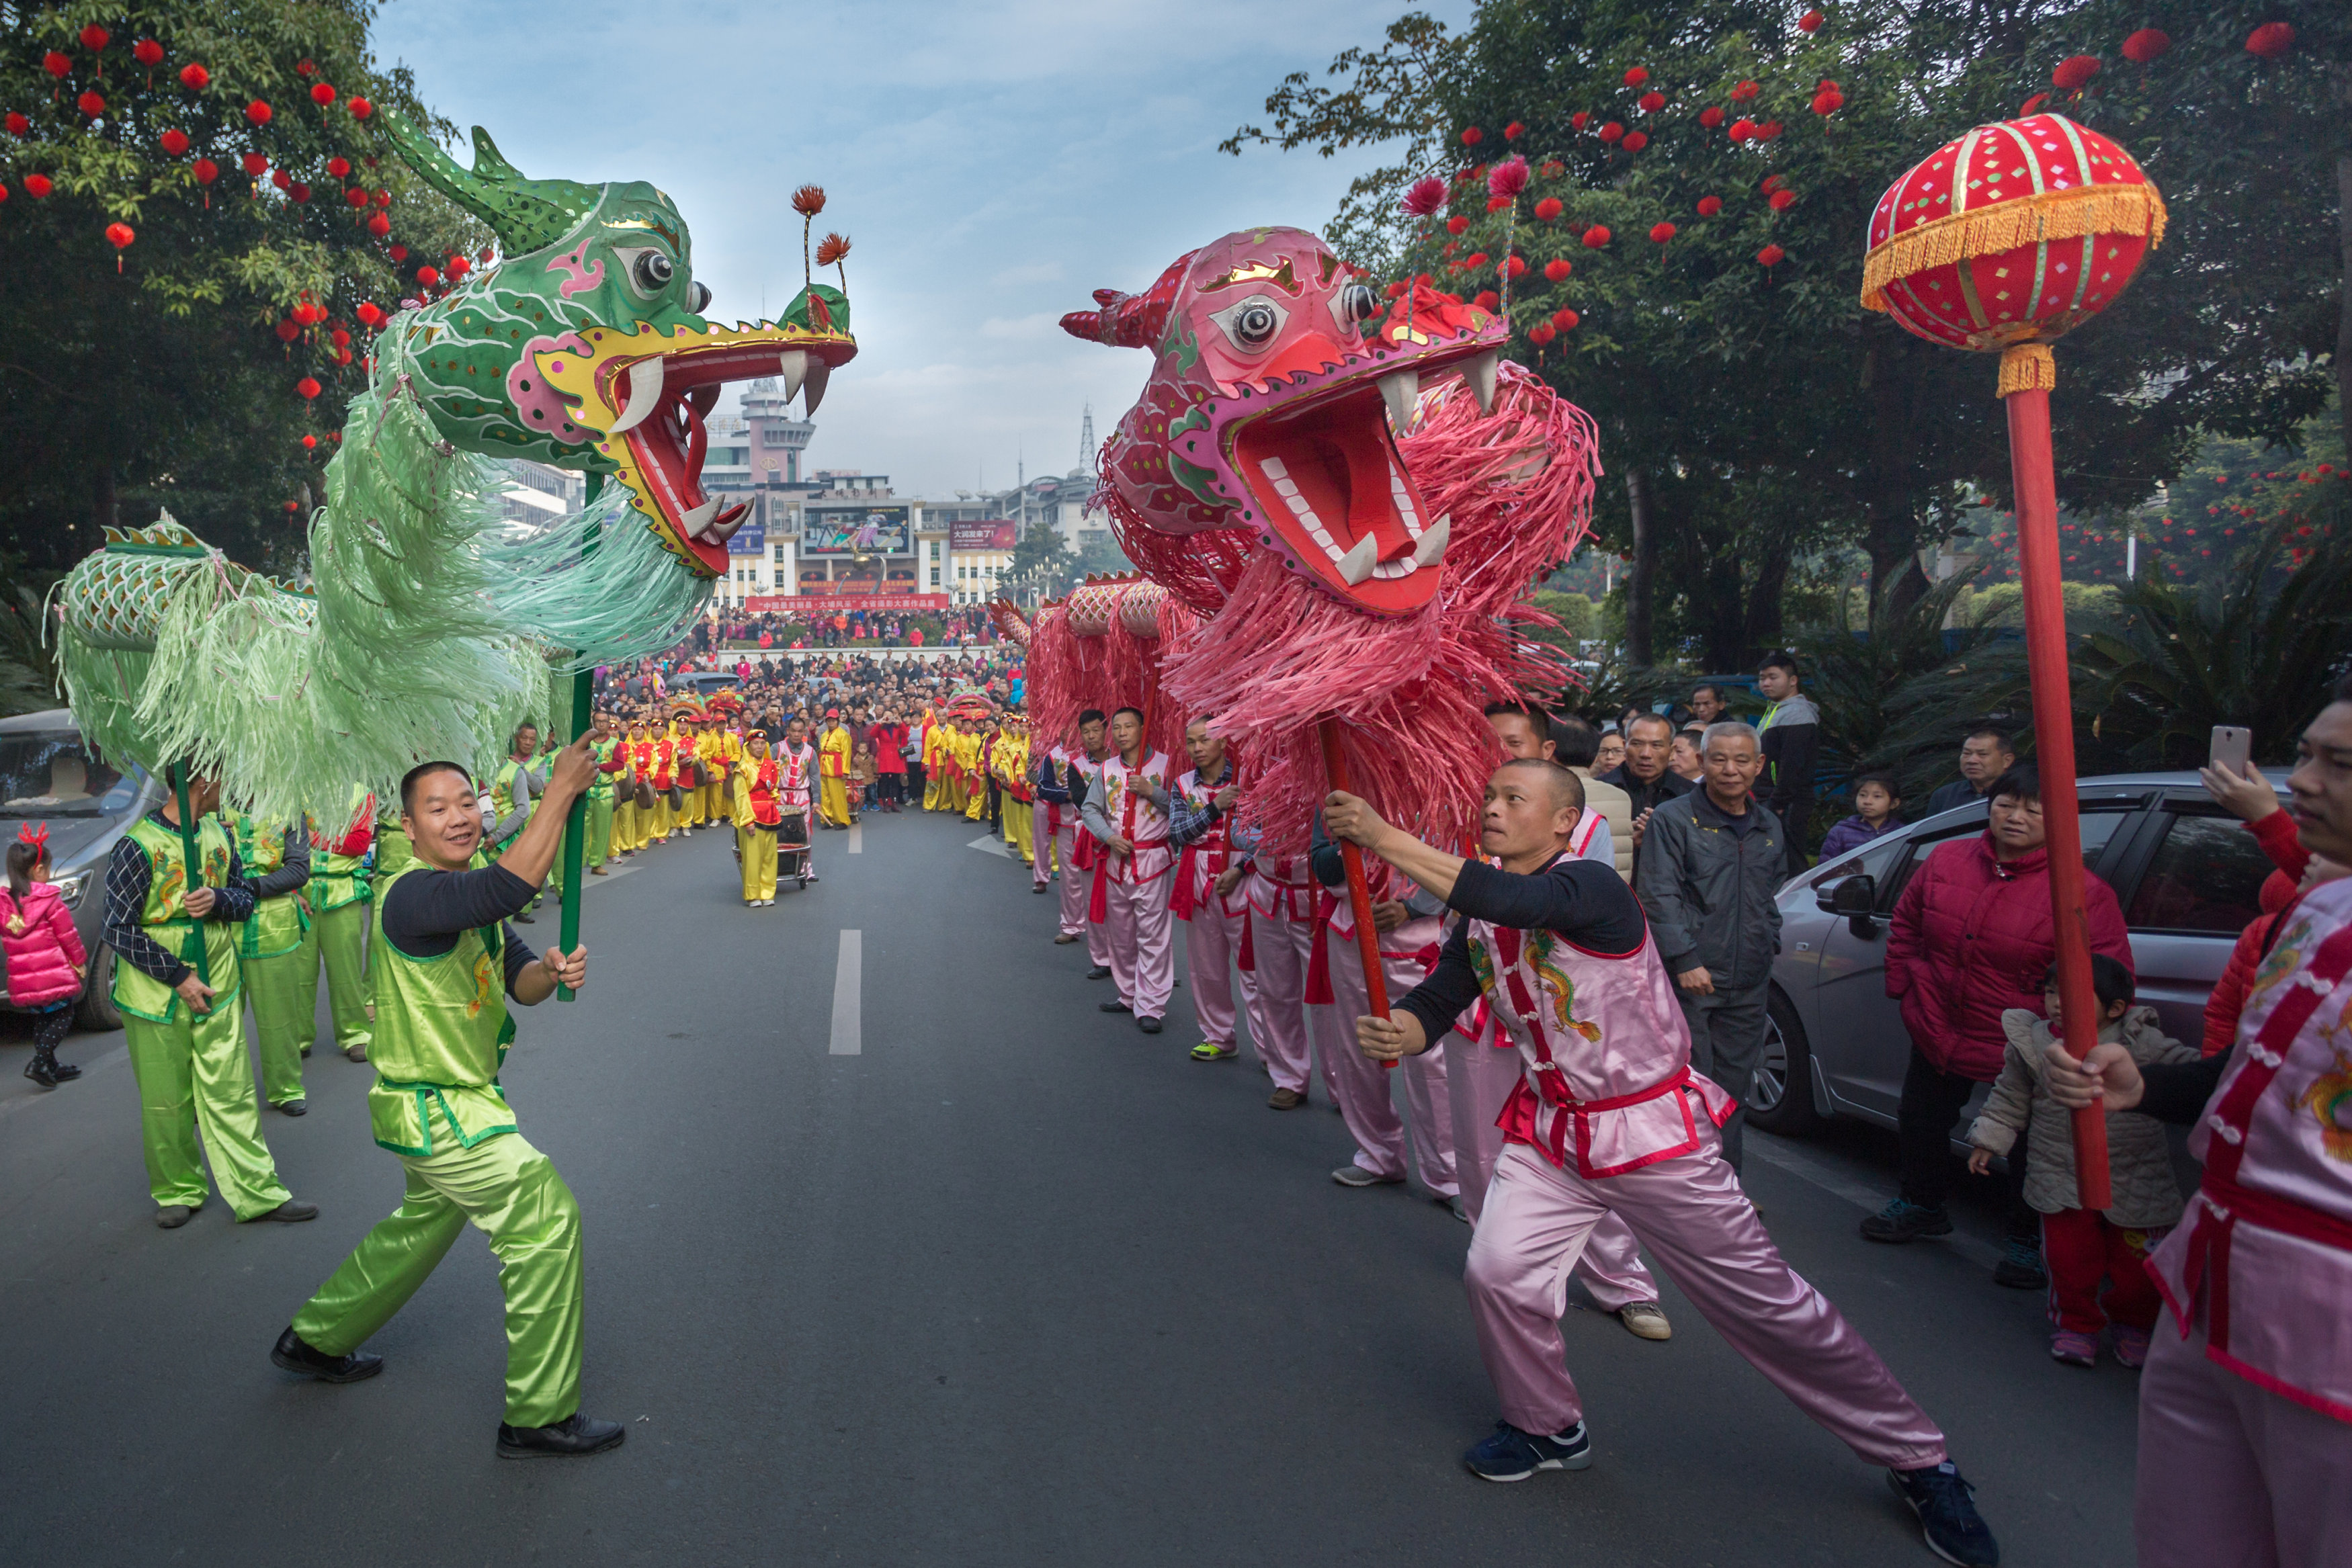 رقصات وعروض فى شوارع الصين احتفالًا بالسنة القمرية الجديدة